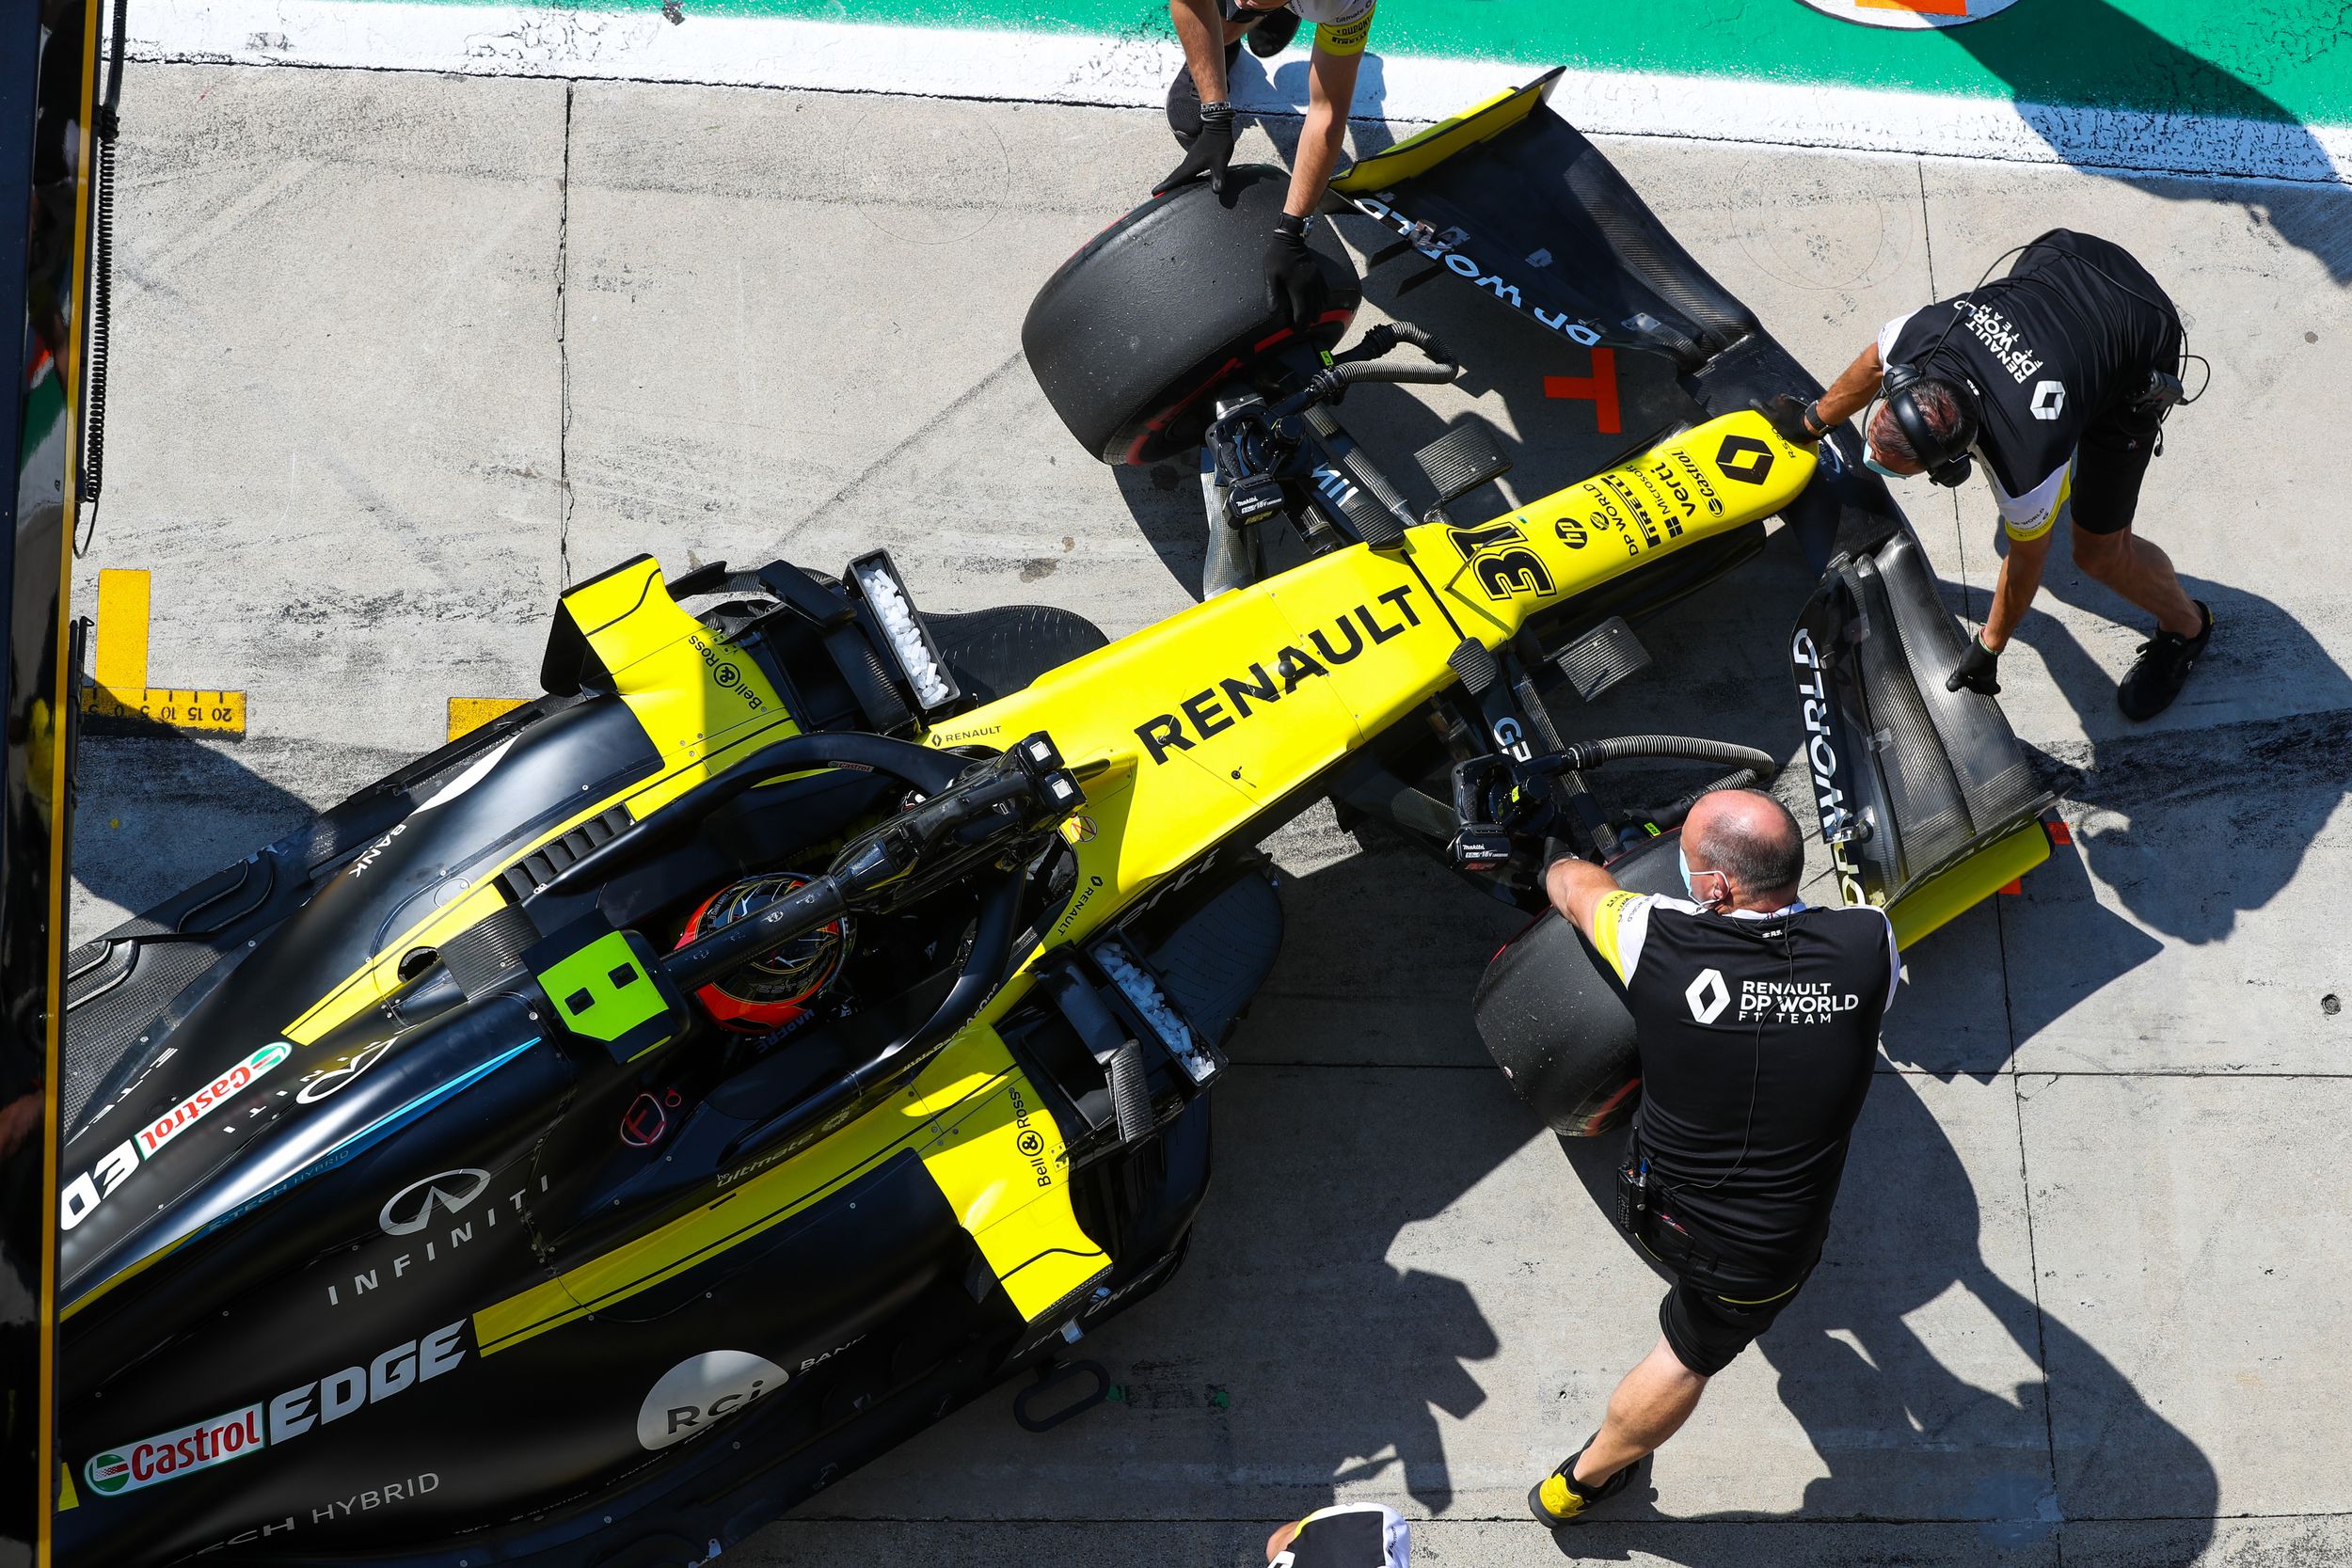 Renault confie le volant à Alpine sur les pistes de formule 1